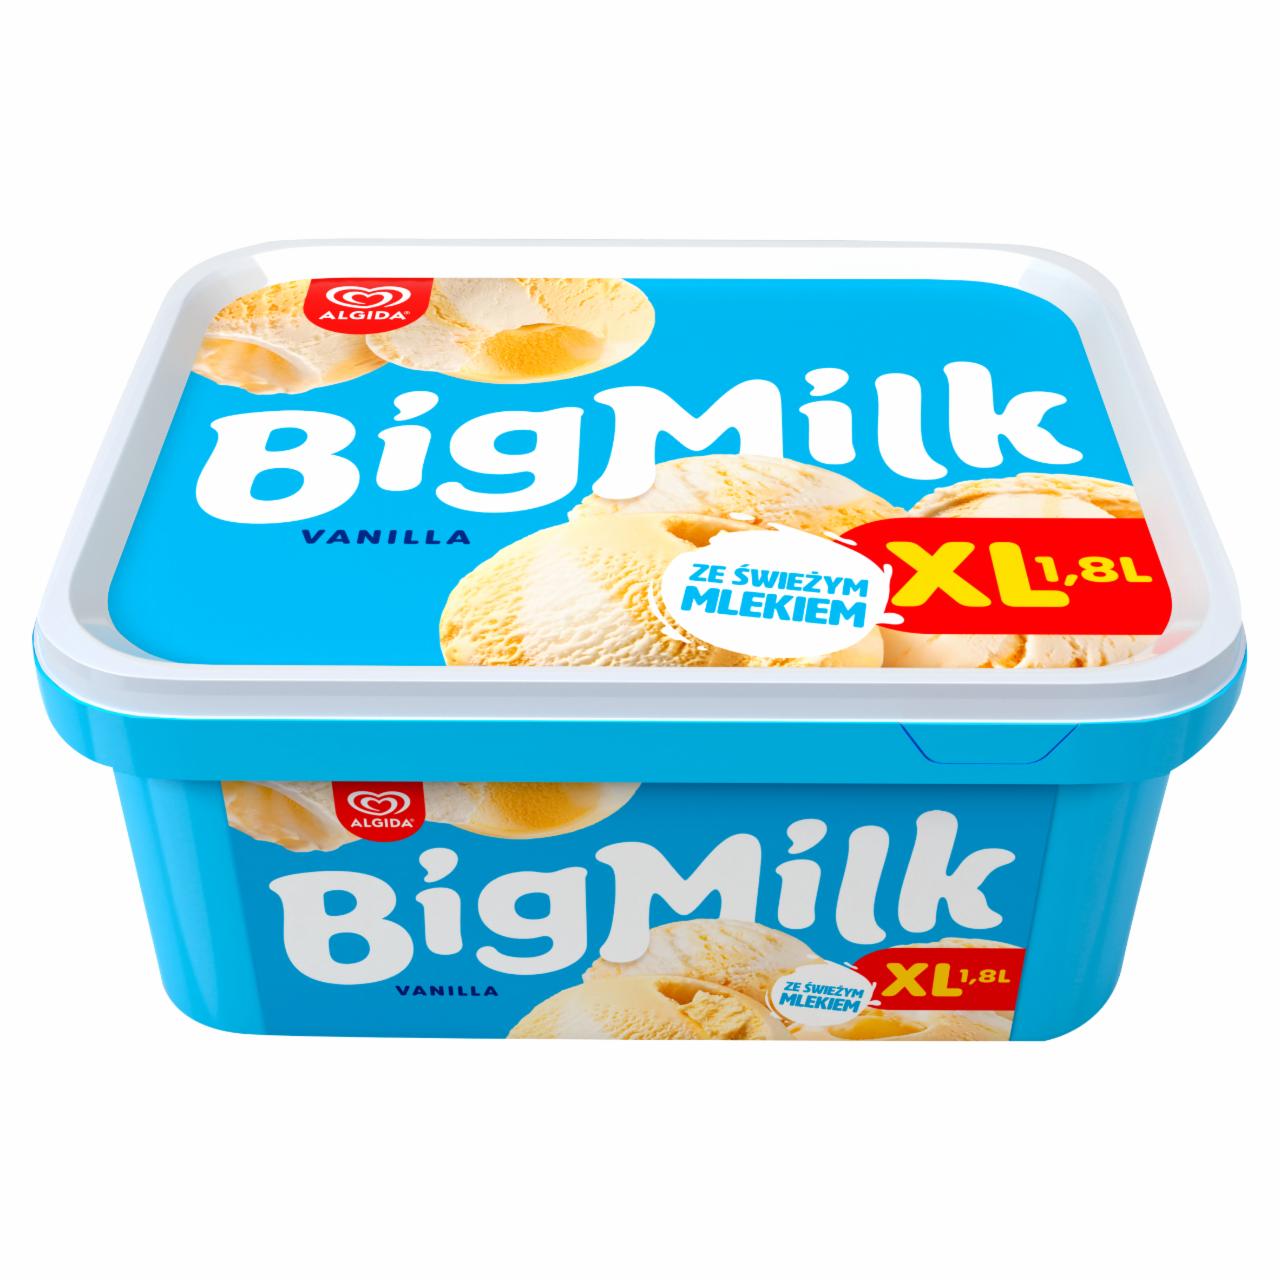 Zdjęcia - Big Milk Vanilla XL Lody 1,8 l